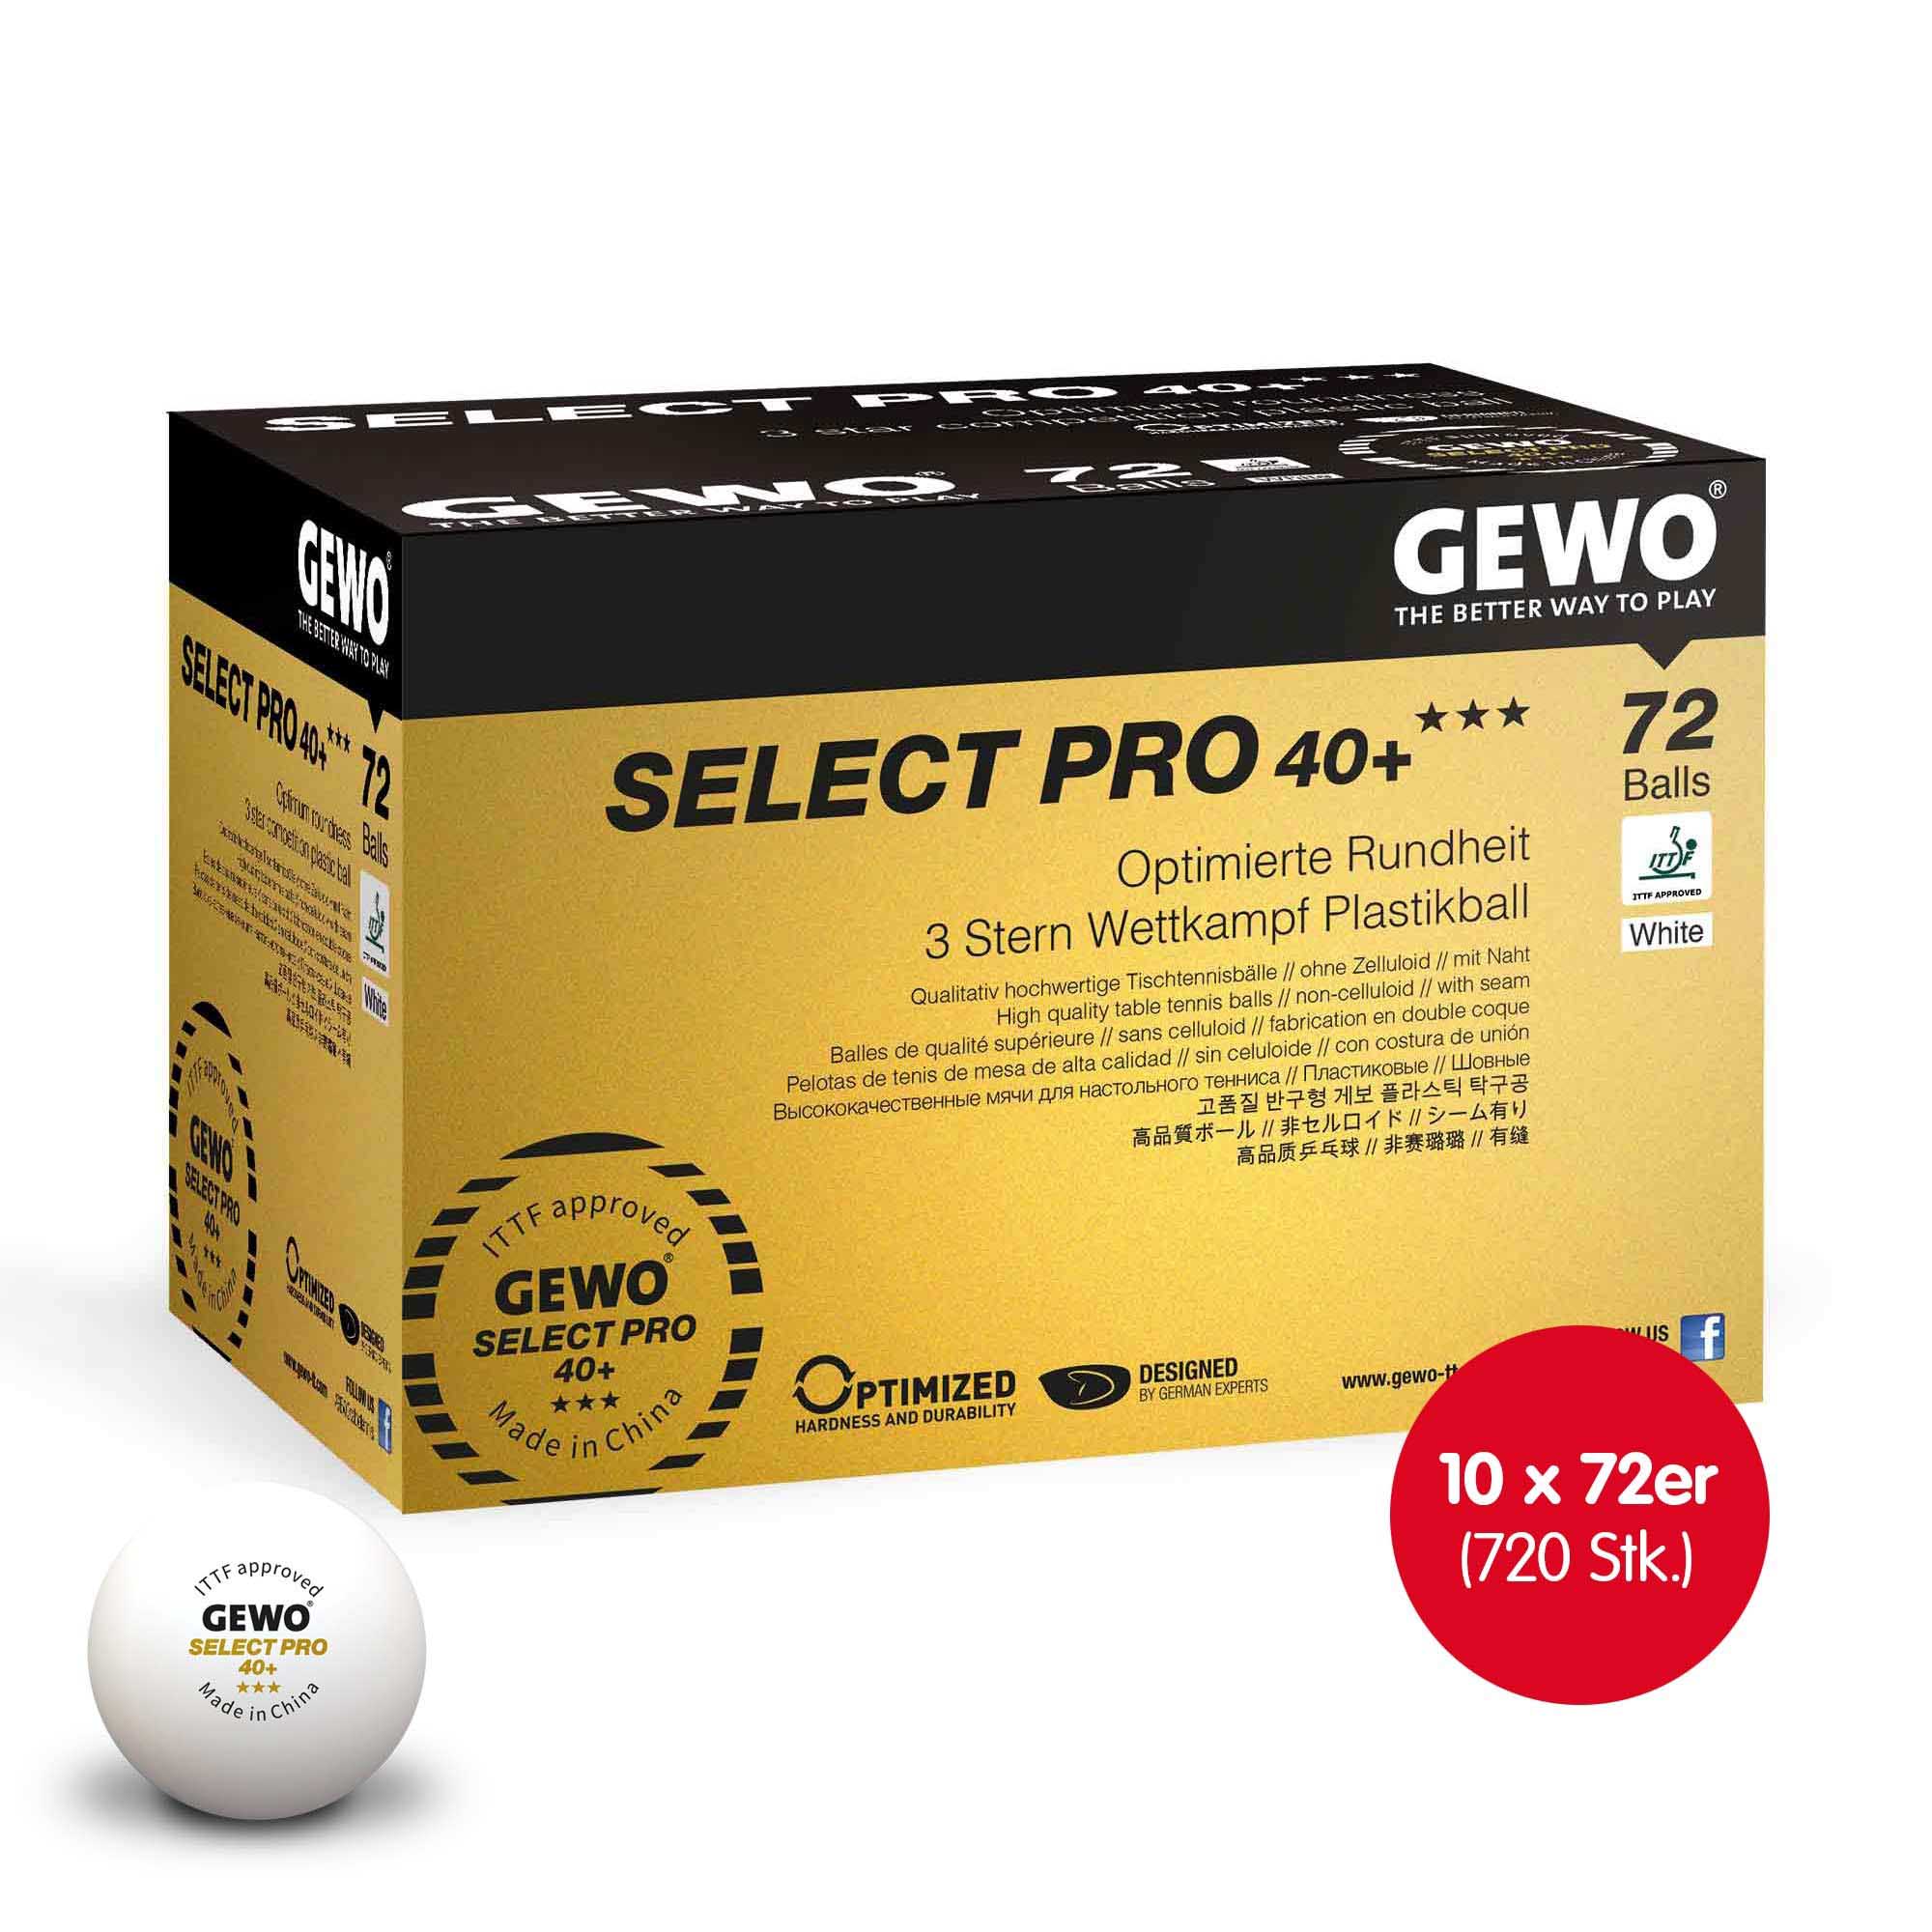 GEWO Select Pro 40+ *** 10x 72er Box white